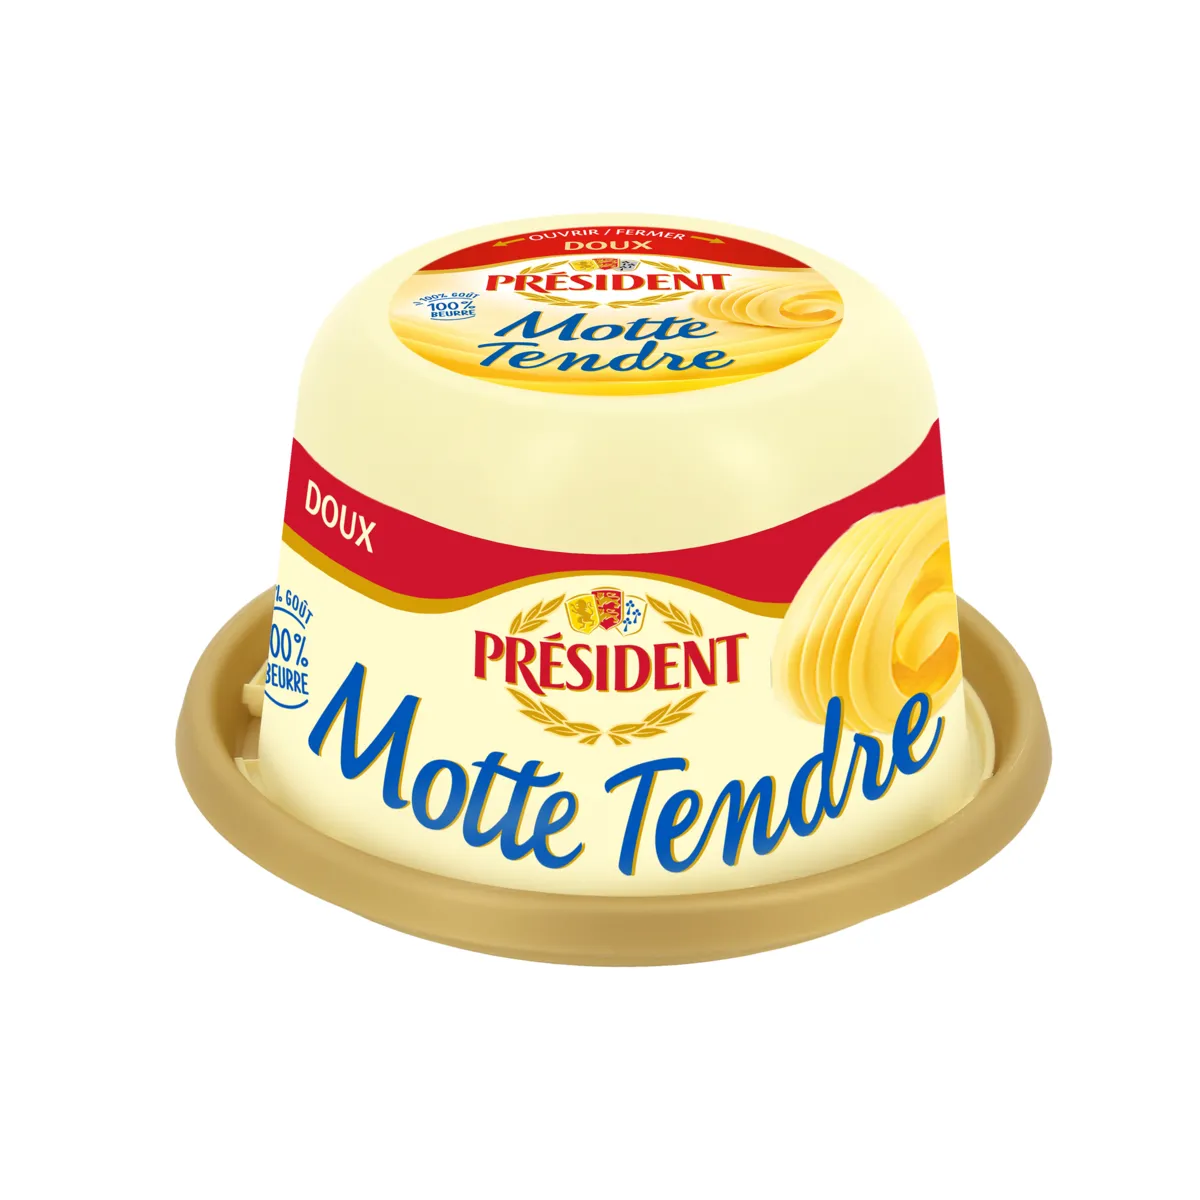 beurre la motte  tendre doux  president